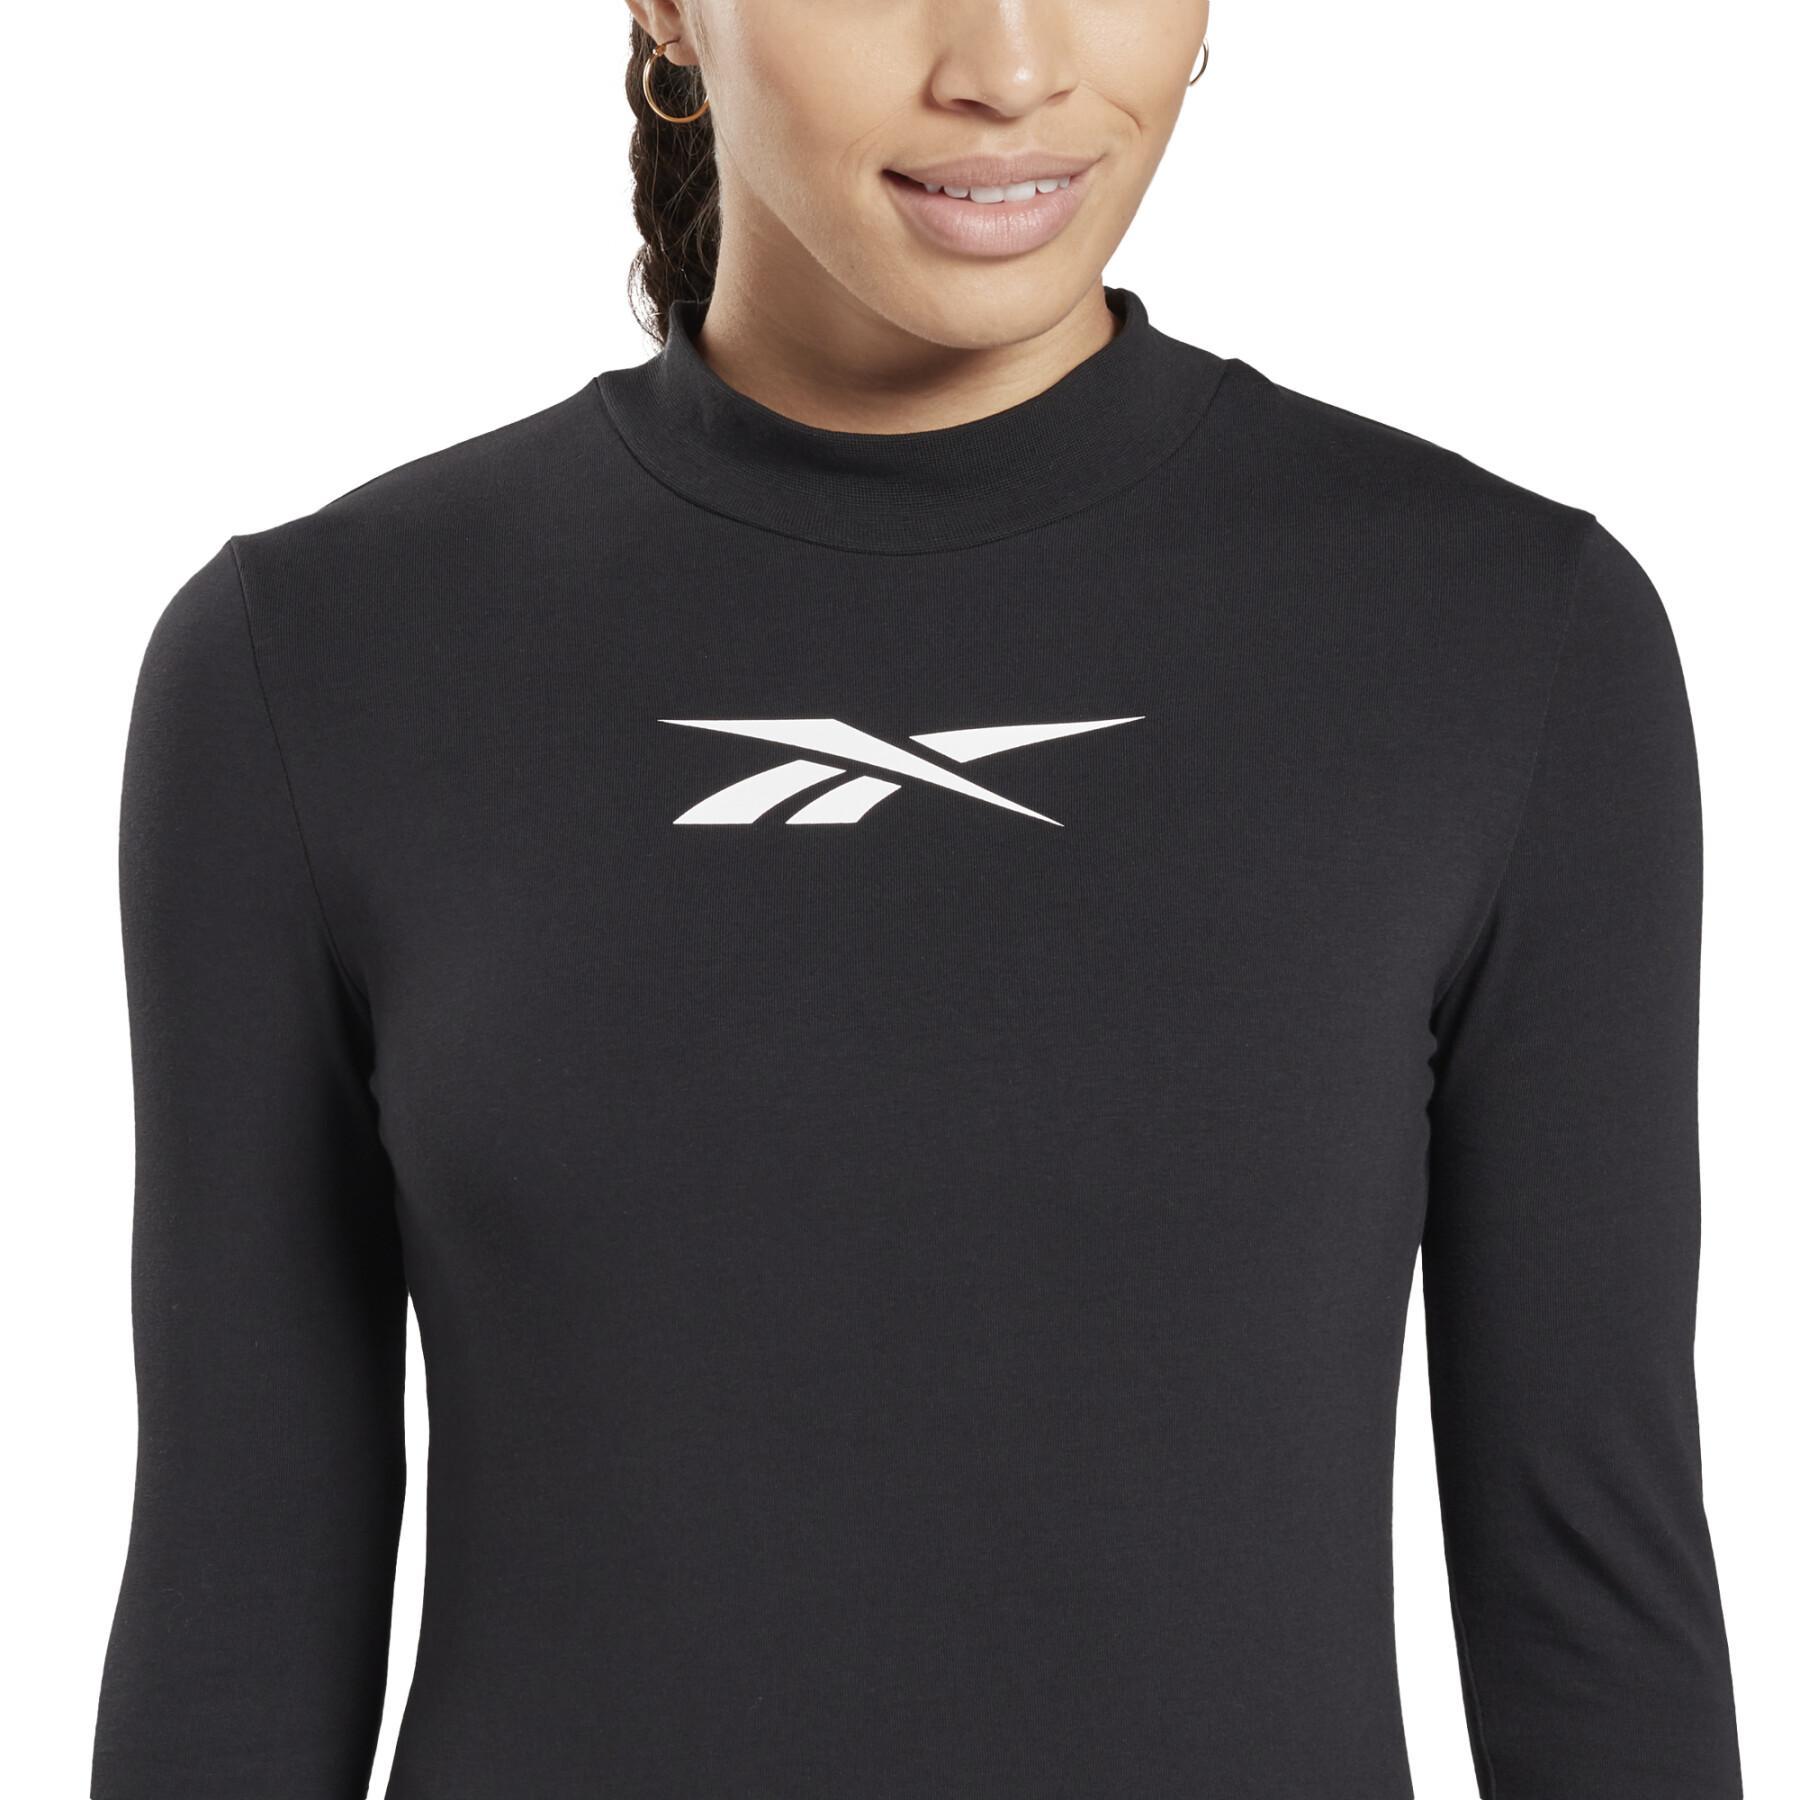 Women's T-shirt Reebok Vector Long Sleeve